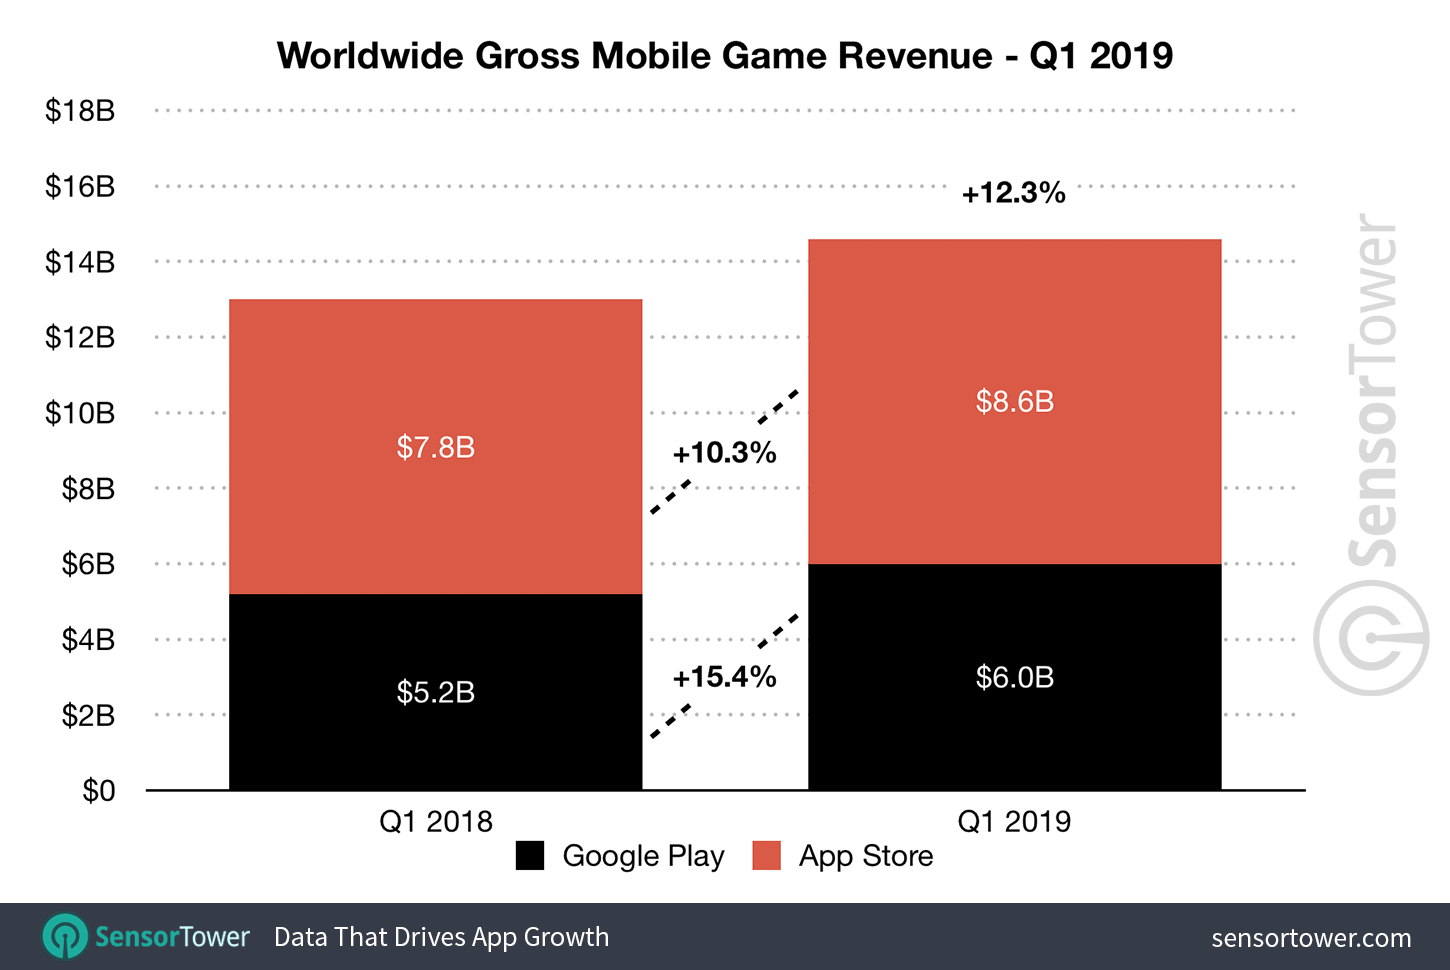 Q1 2019 Mobile Game Revenue